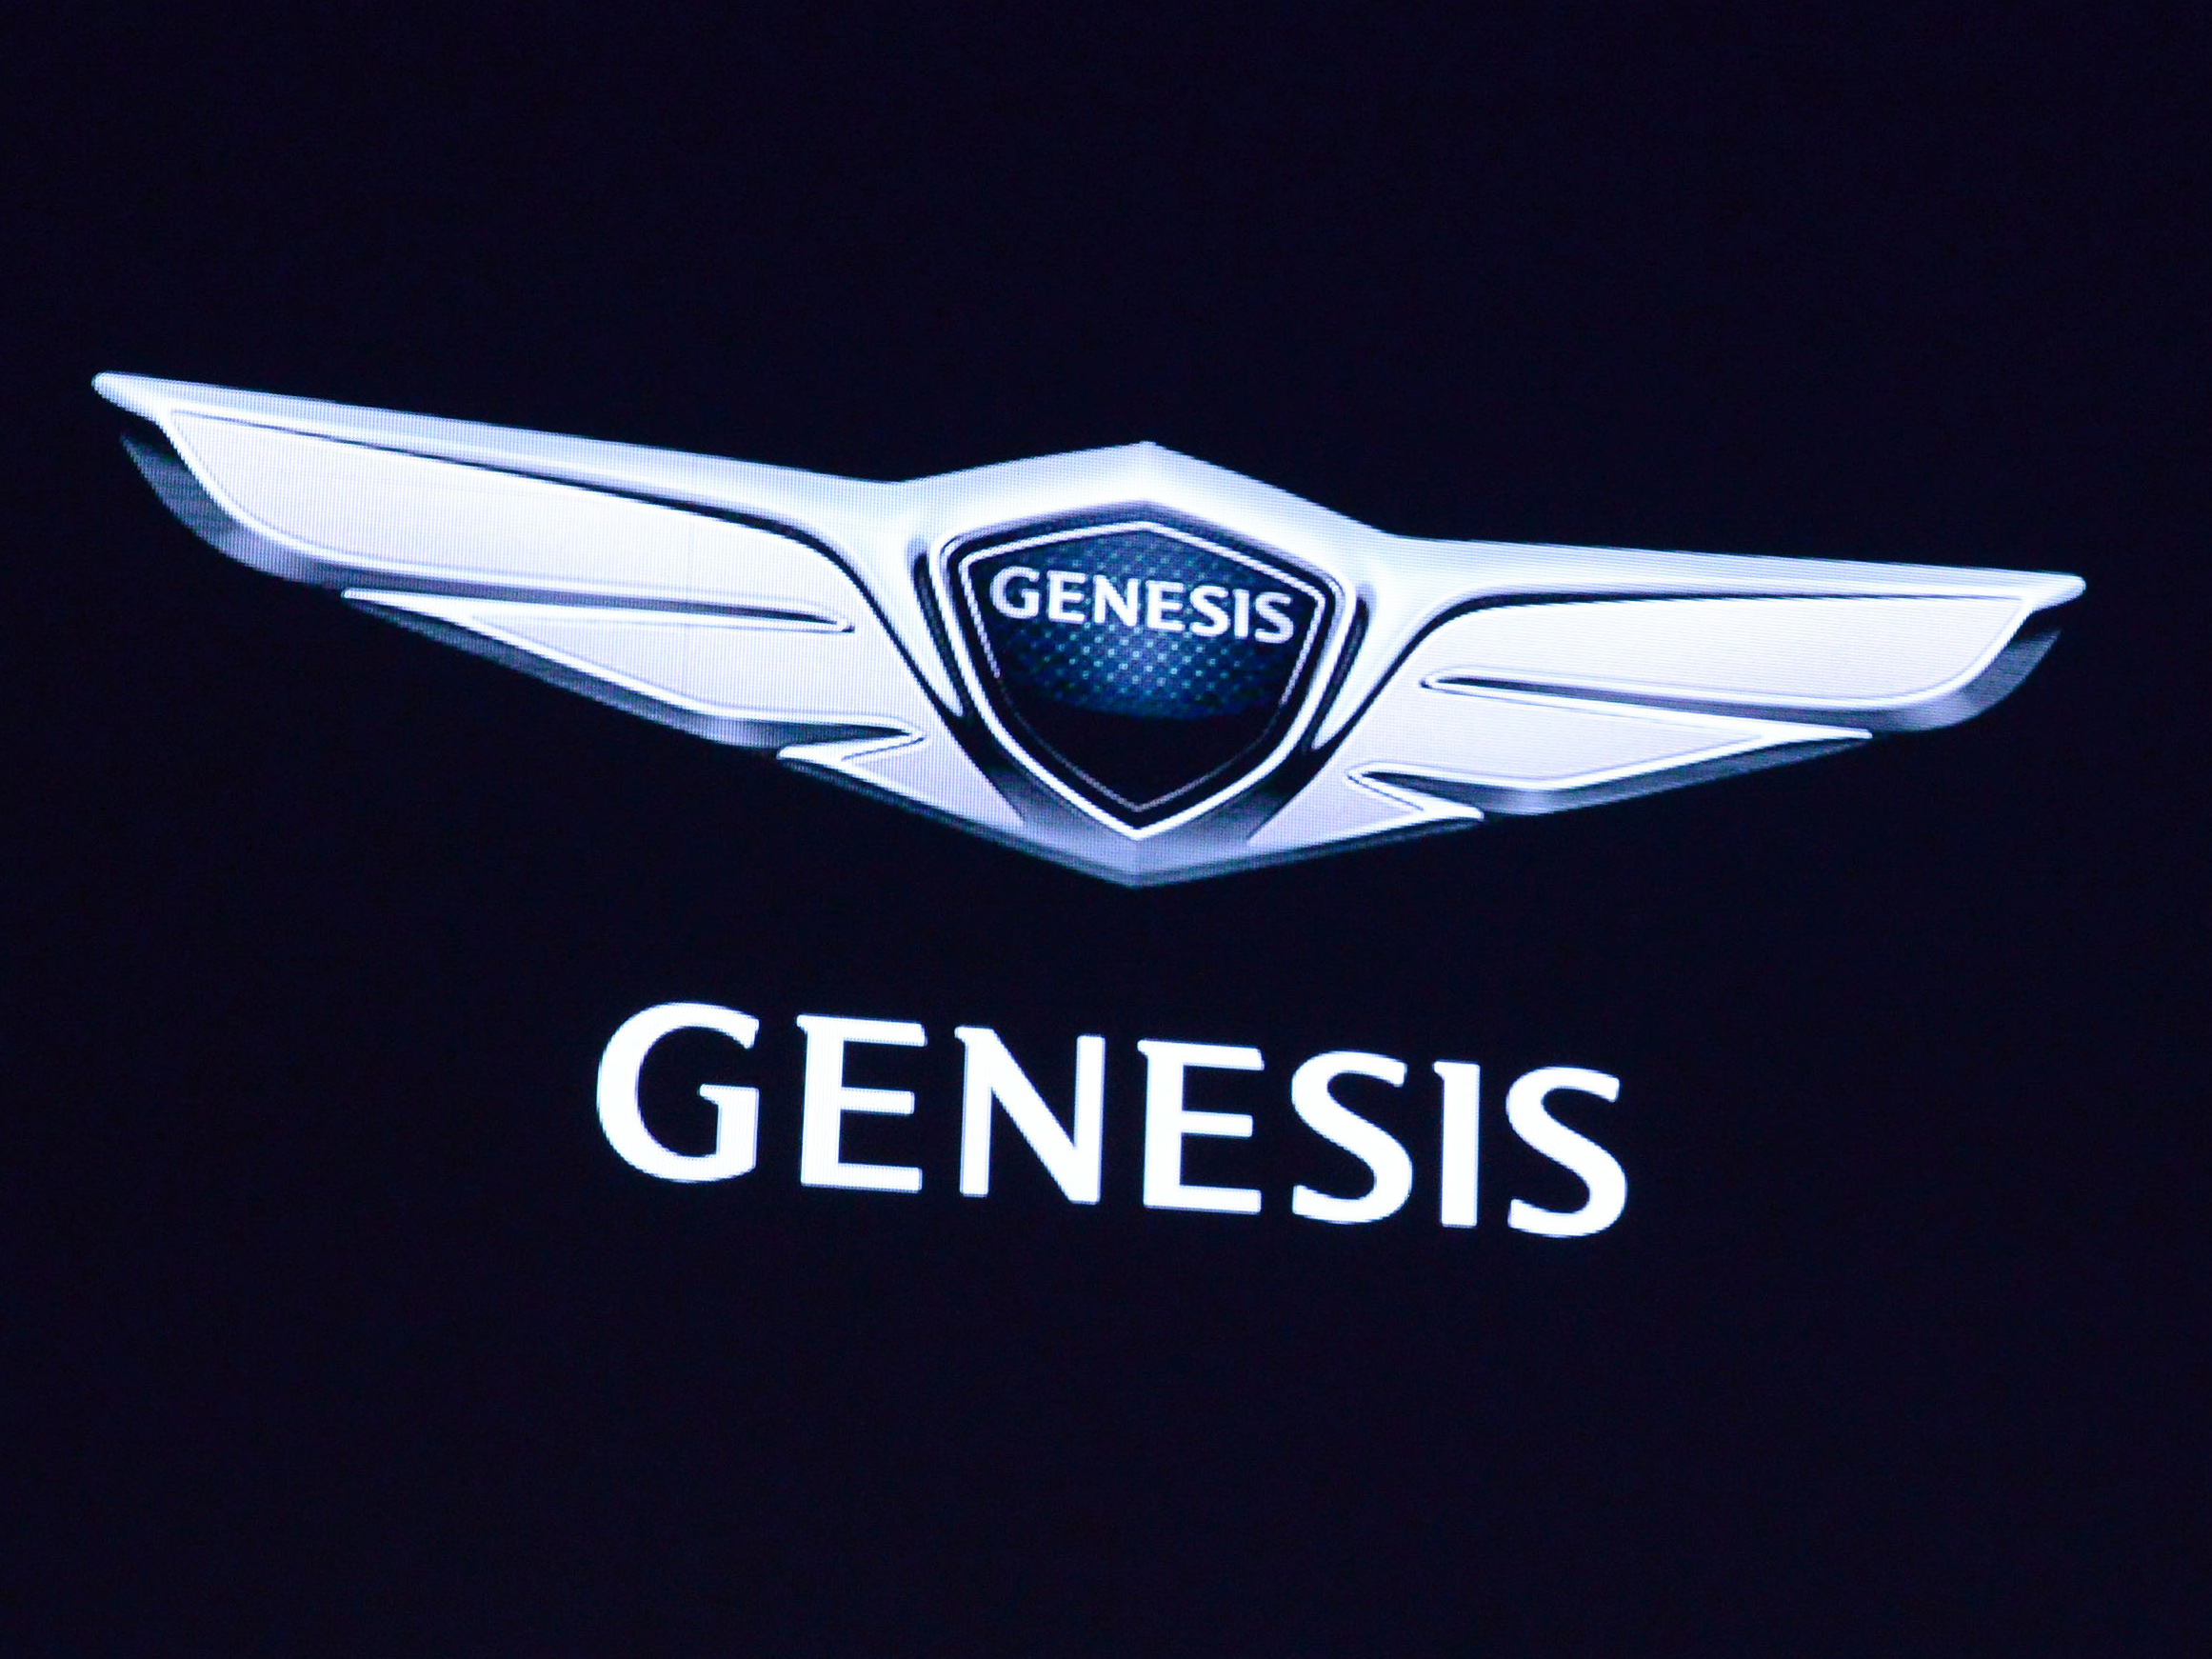 Hyundai launches new Genesis luxury brand